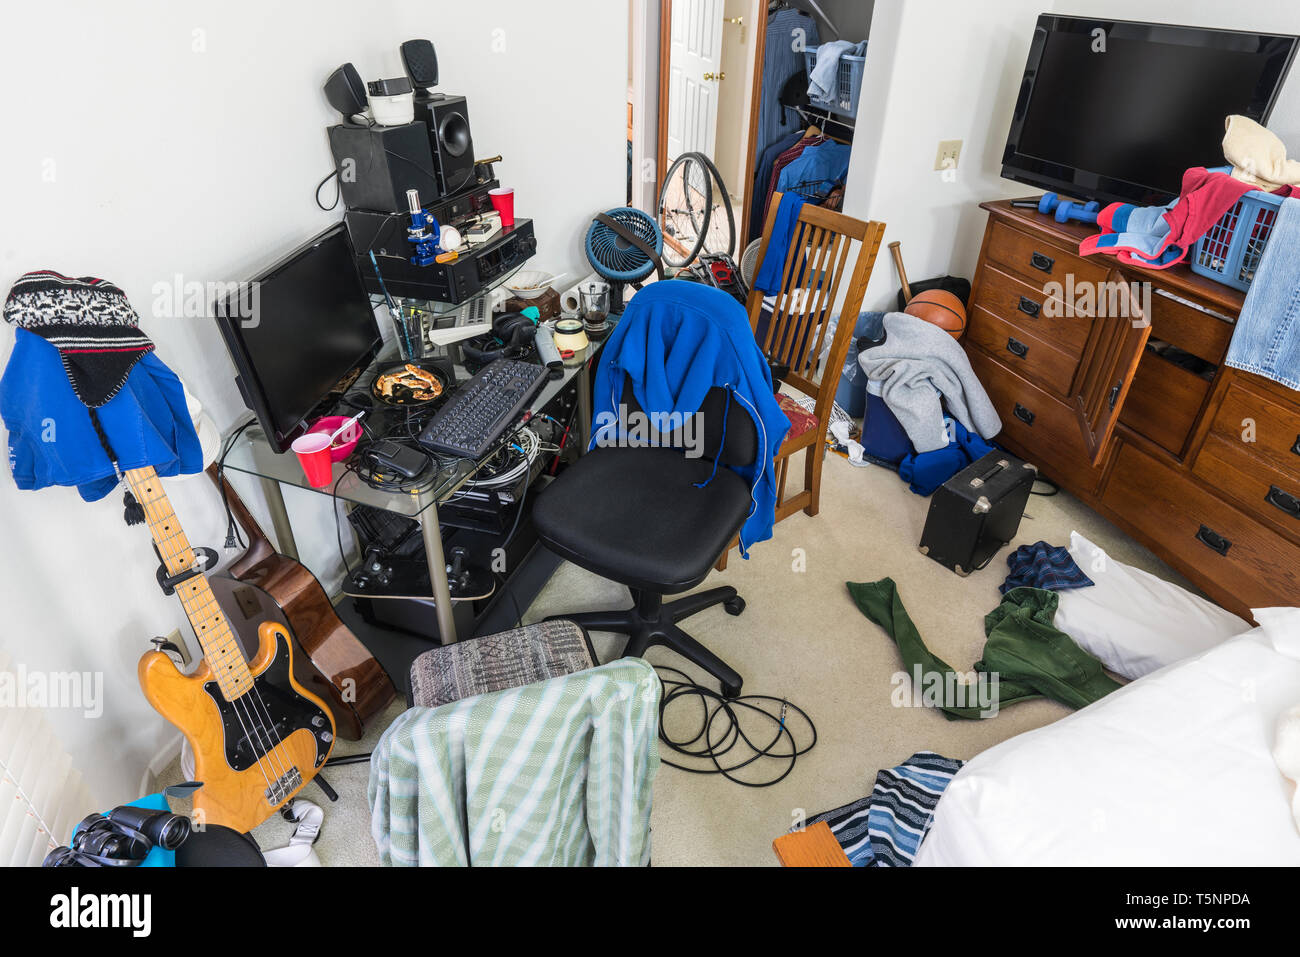 Chaotisch, überladen Jugendjungen Schlafzimmer mit unordentlicher Stapel von Kleidung, Elektronik, Musik und Sport. Stockfoto